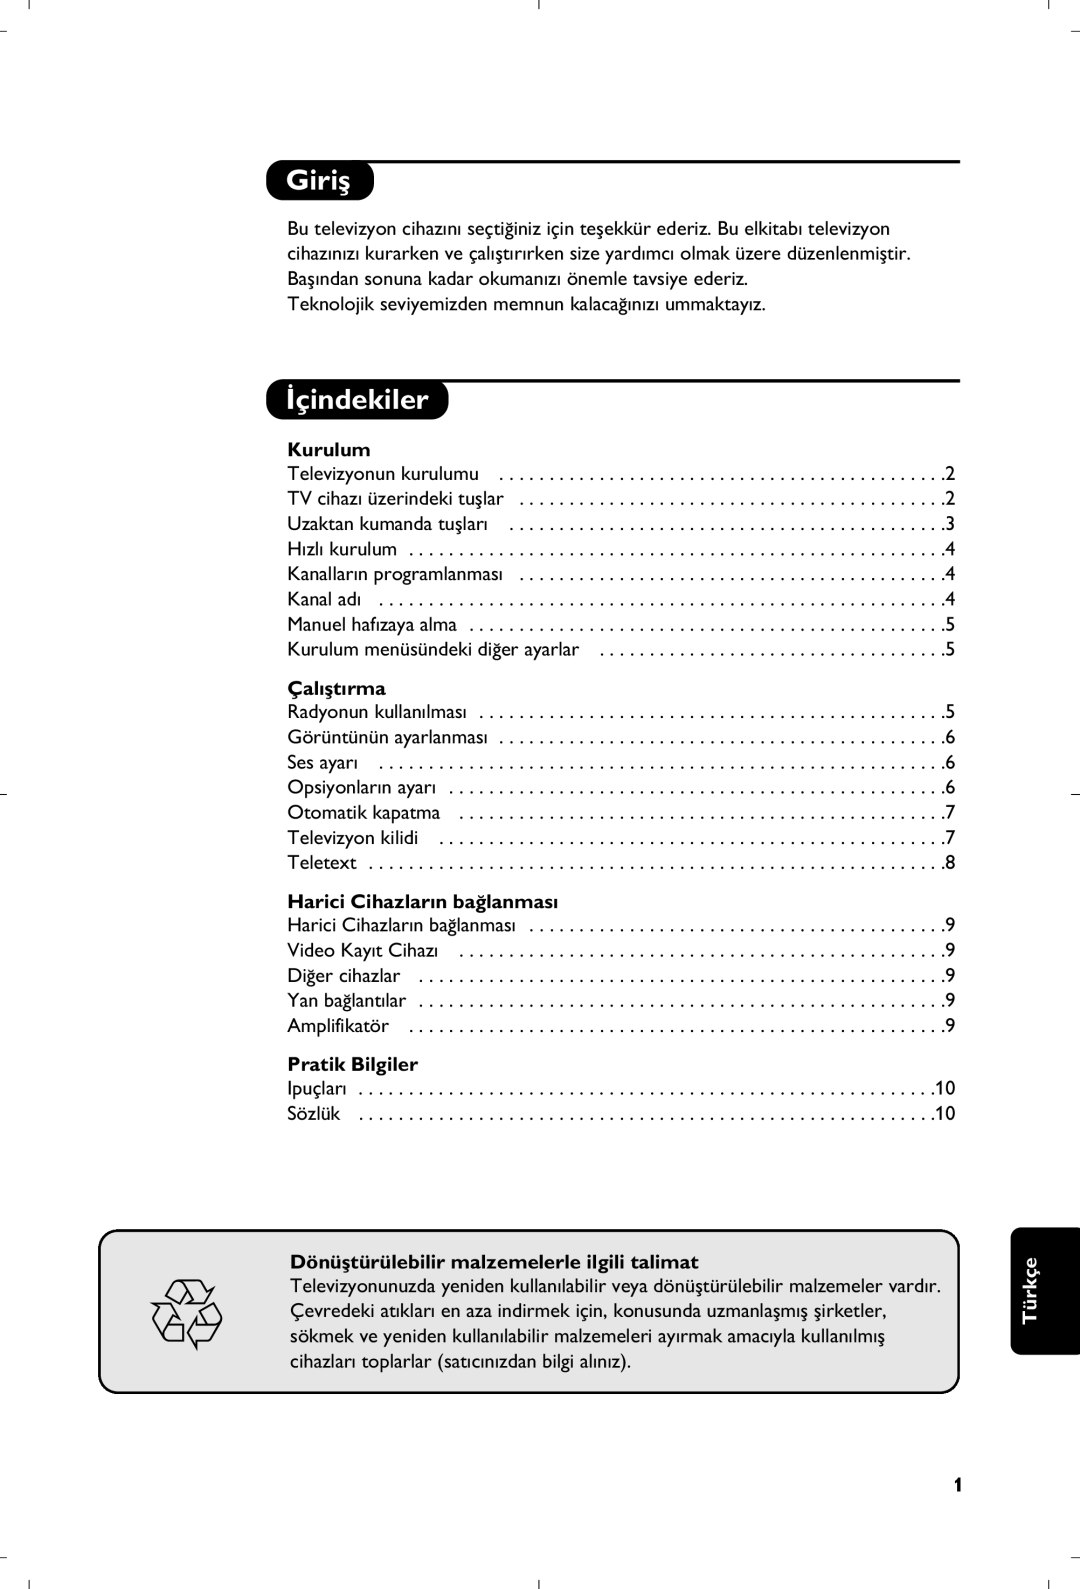 Philips 21PT4457/58 manual Giriﬂ, ‹çindekiler, Kurulum, Çal›ﬂt›rma, Harici Cihazlar›n ba¤lanmas›, Pratik Bilgiler, Türkçe 